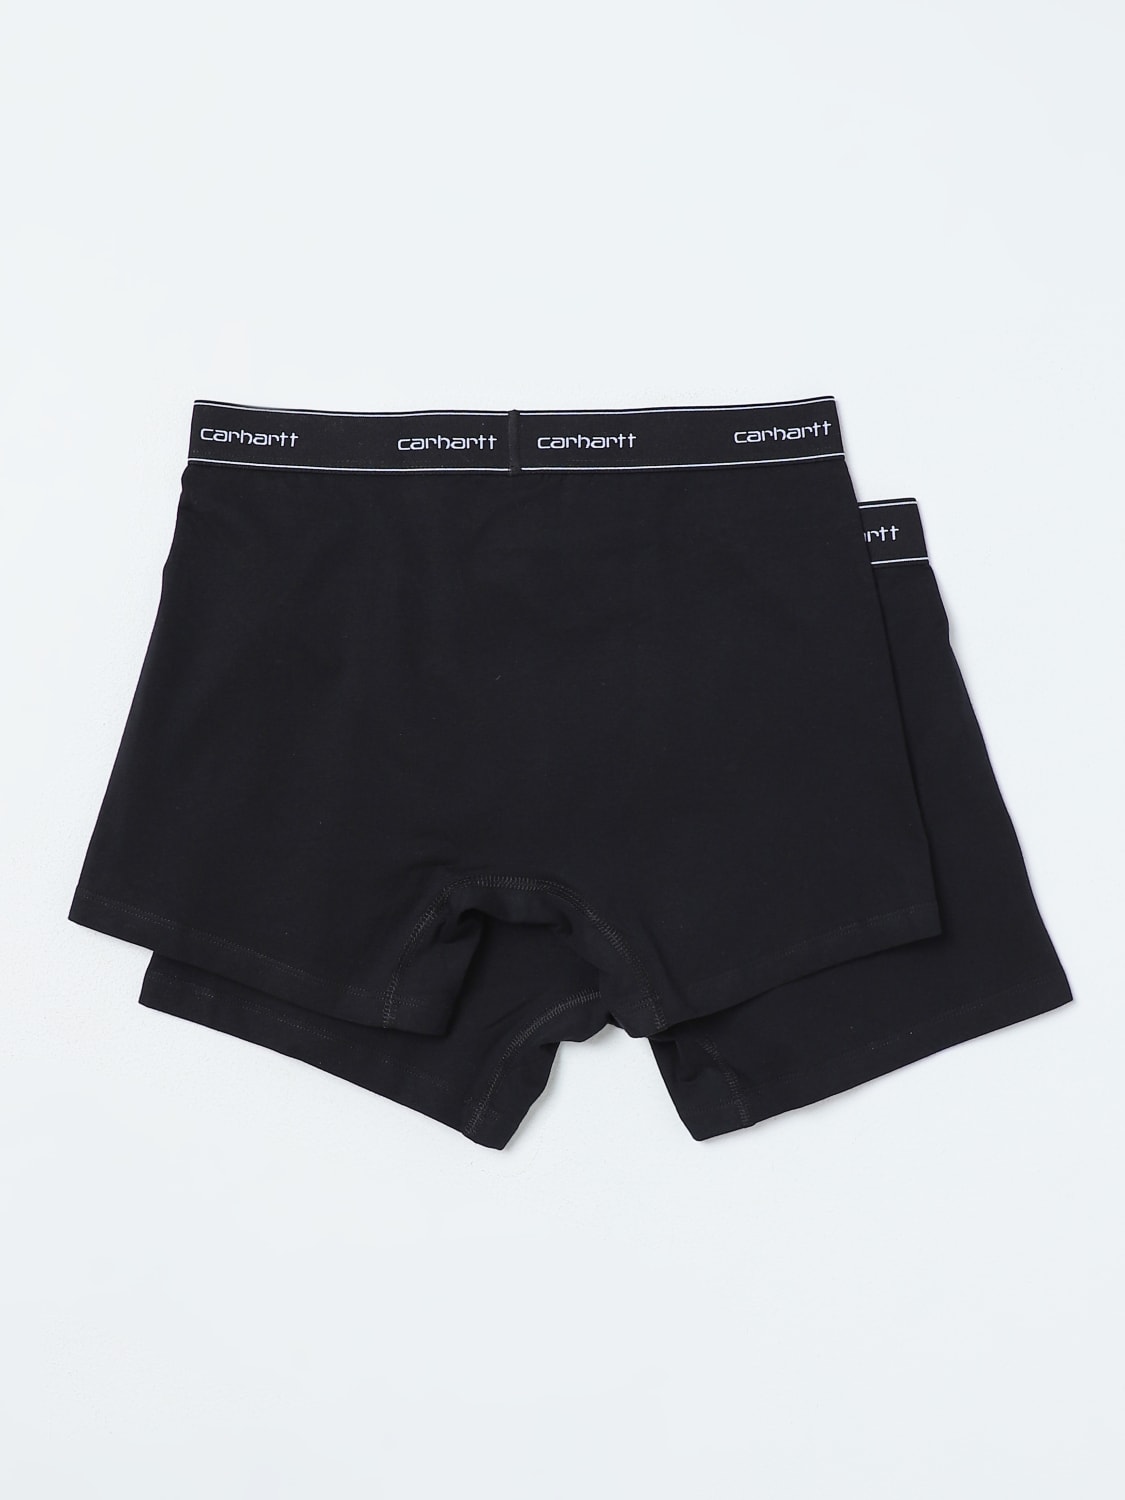 Carhartt Wip underwear for man